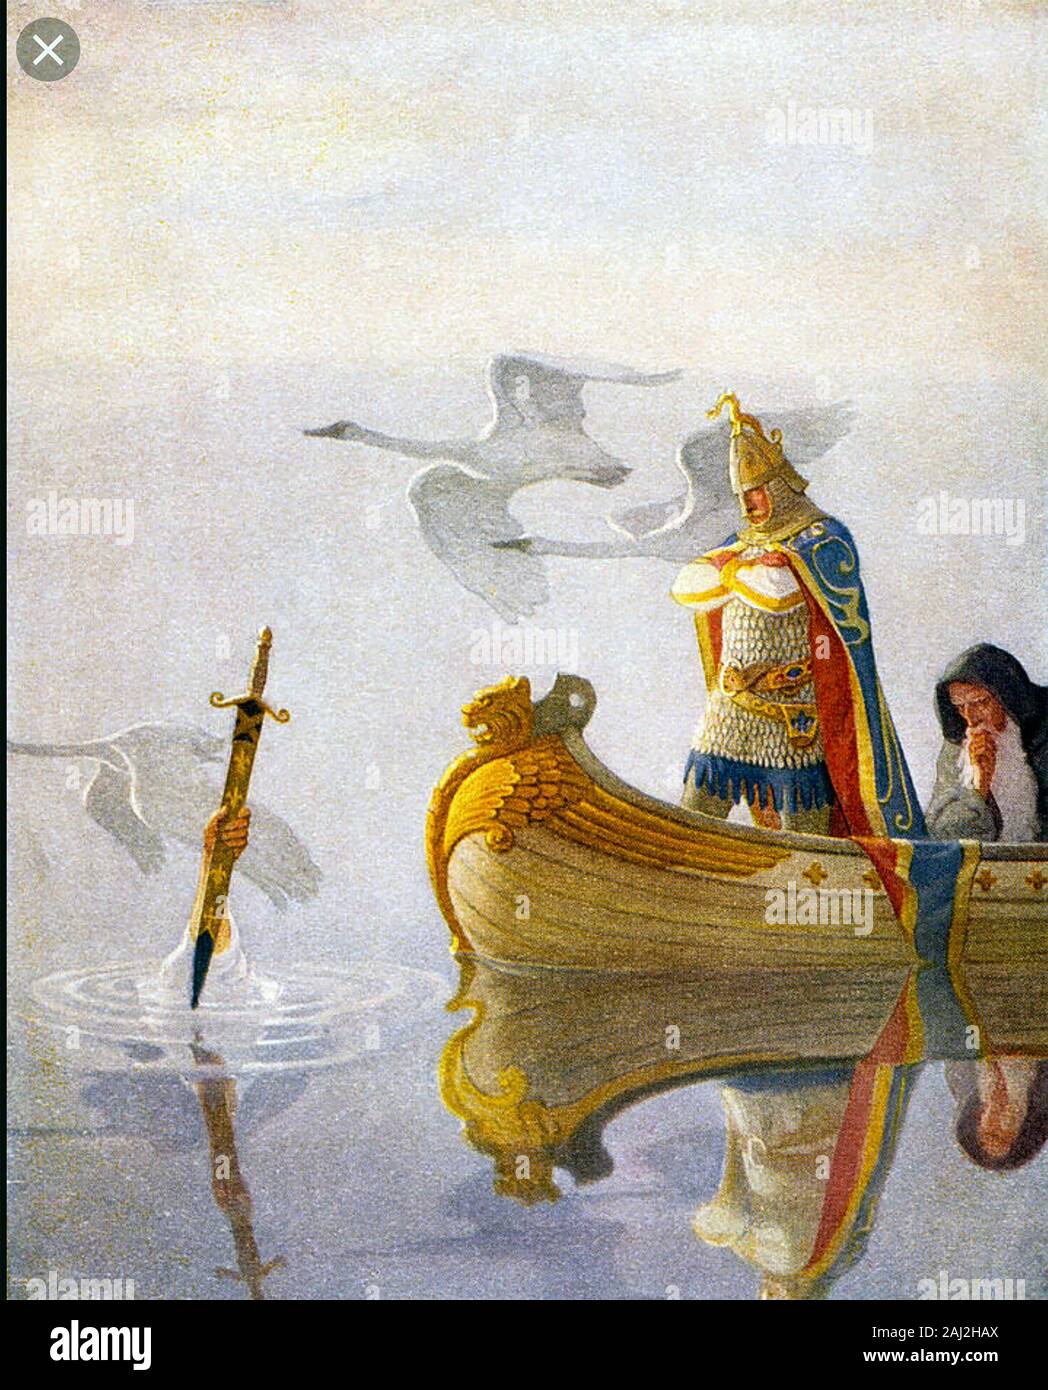 König Artus und Merlin Sehen Sie sich die Dame vom See das Schwert  Excalibur Präsentation Stockfotografie - Alamy